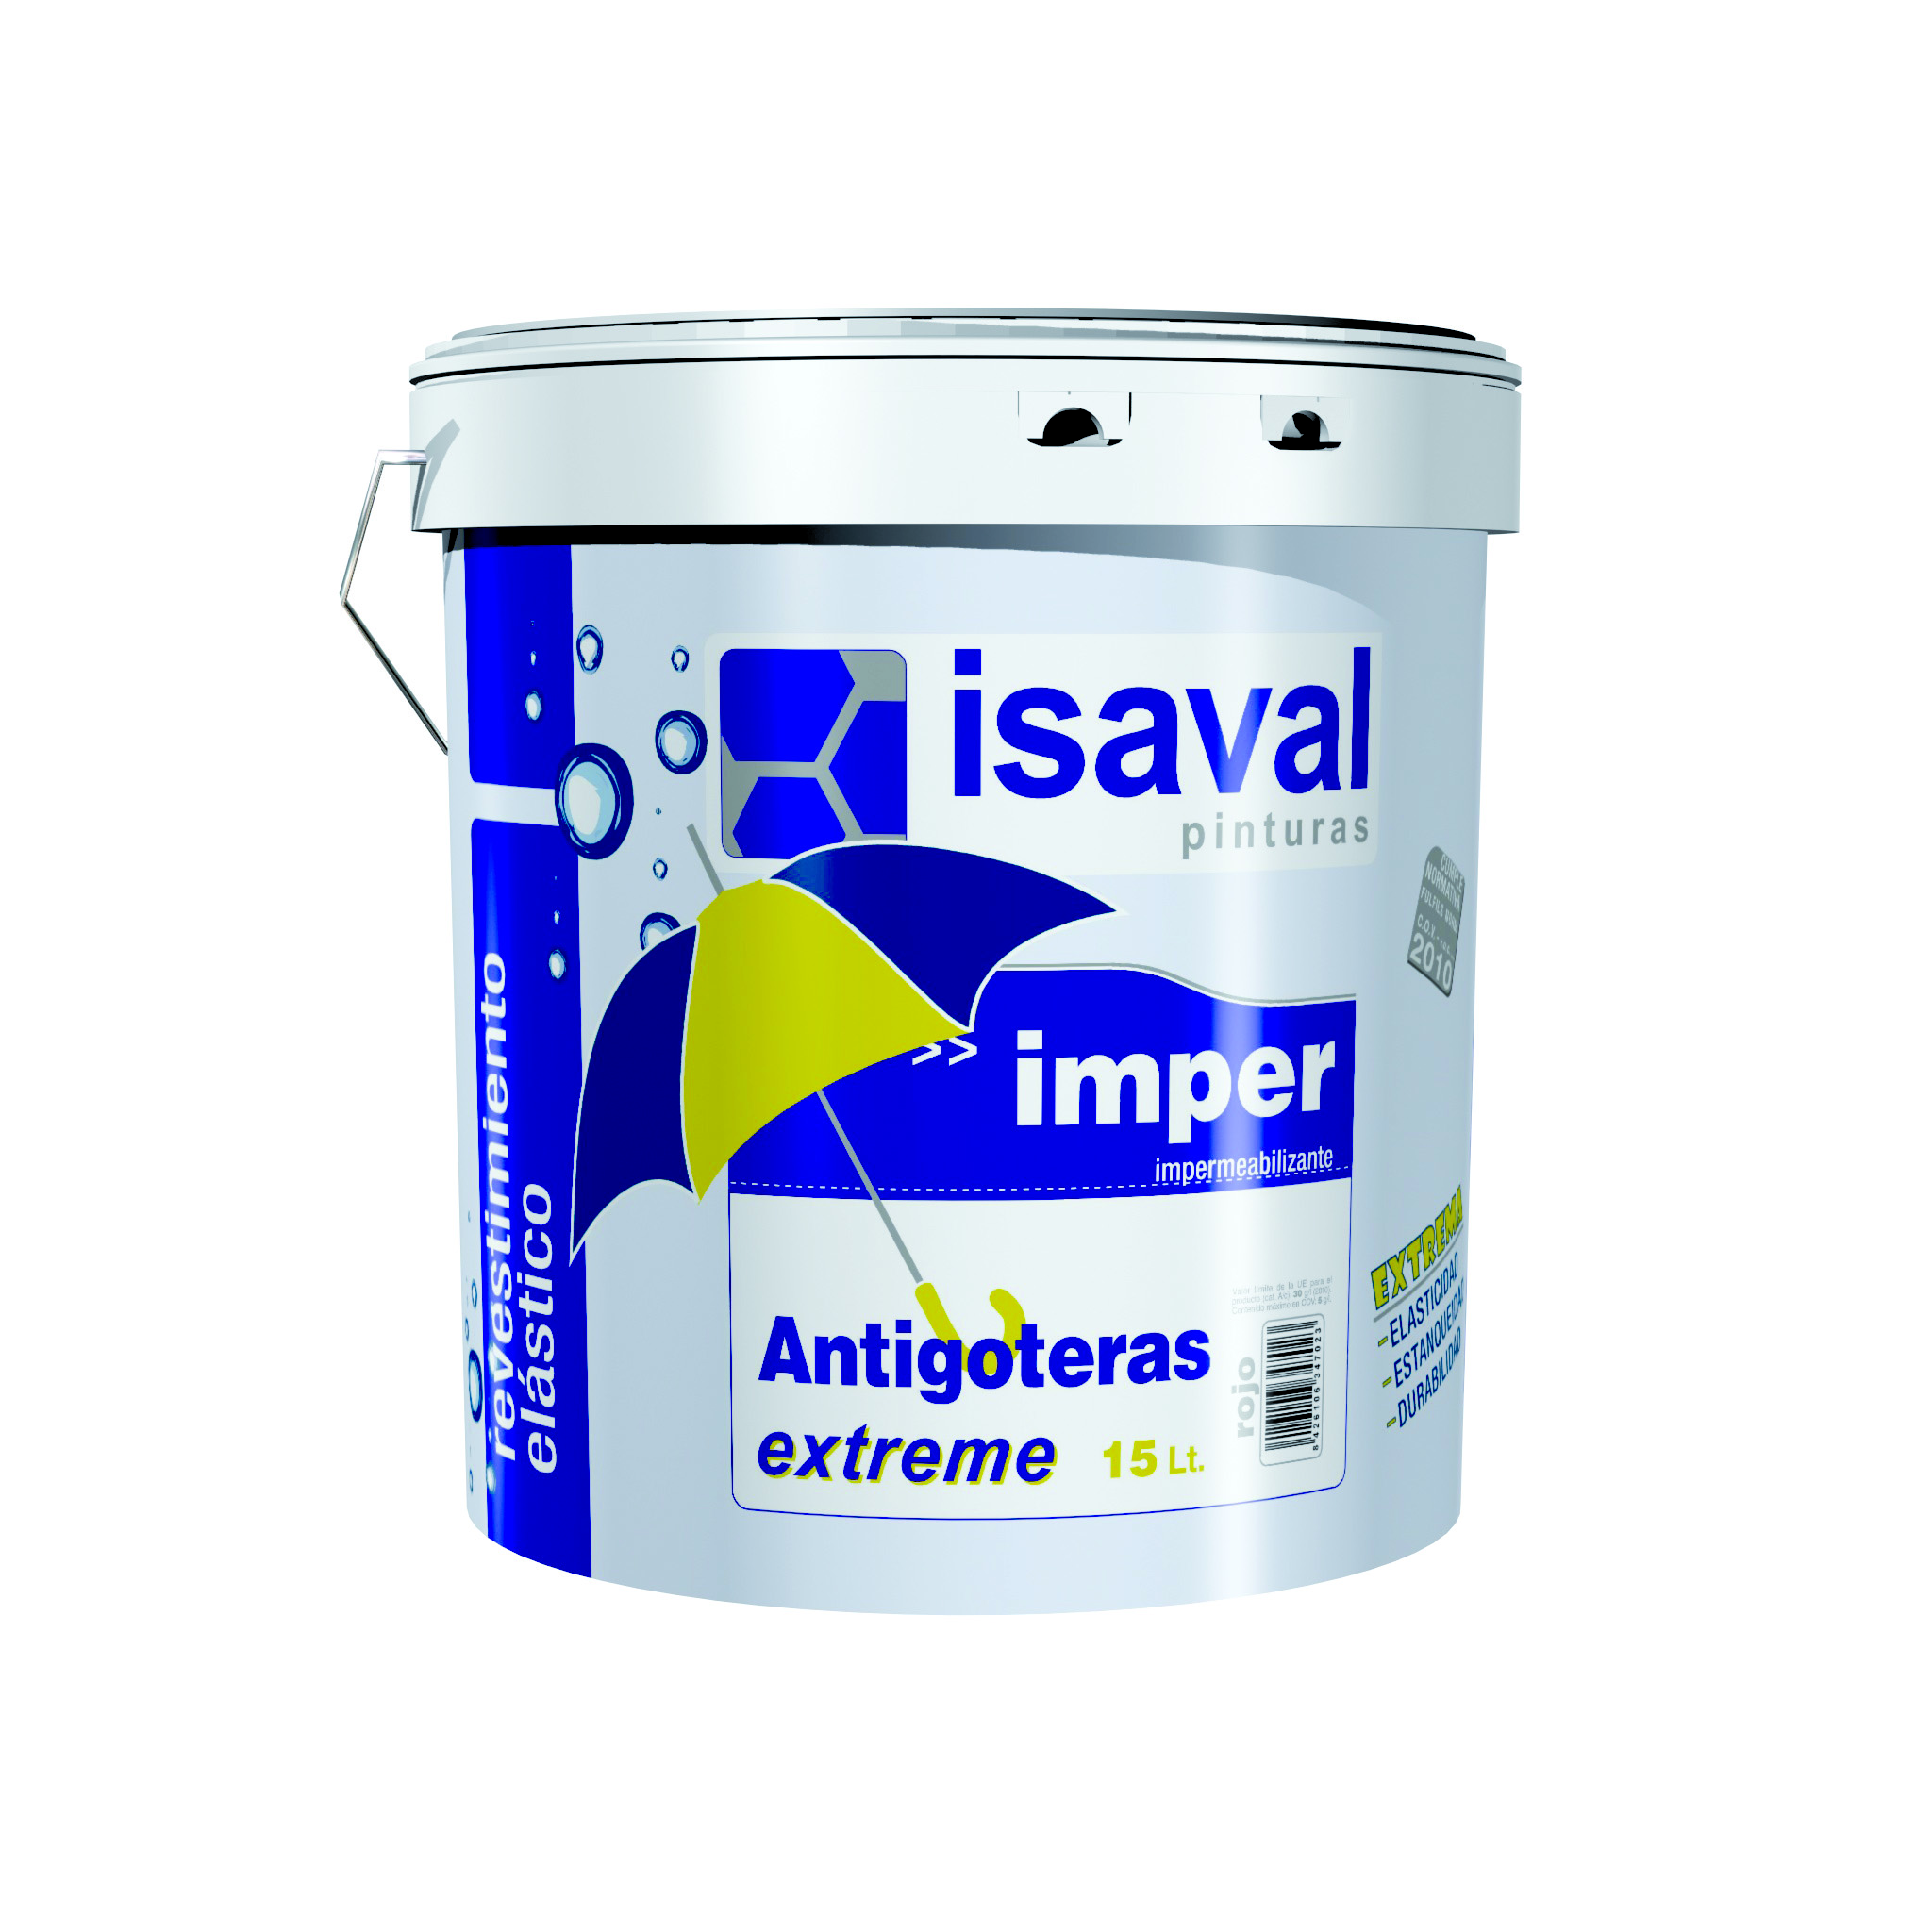 Гидроизолирующая резиновая краска для крыш, стен и полов Антиготерас 15л ISAVAL